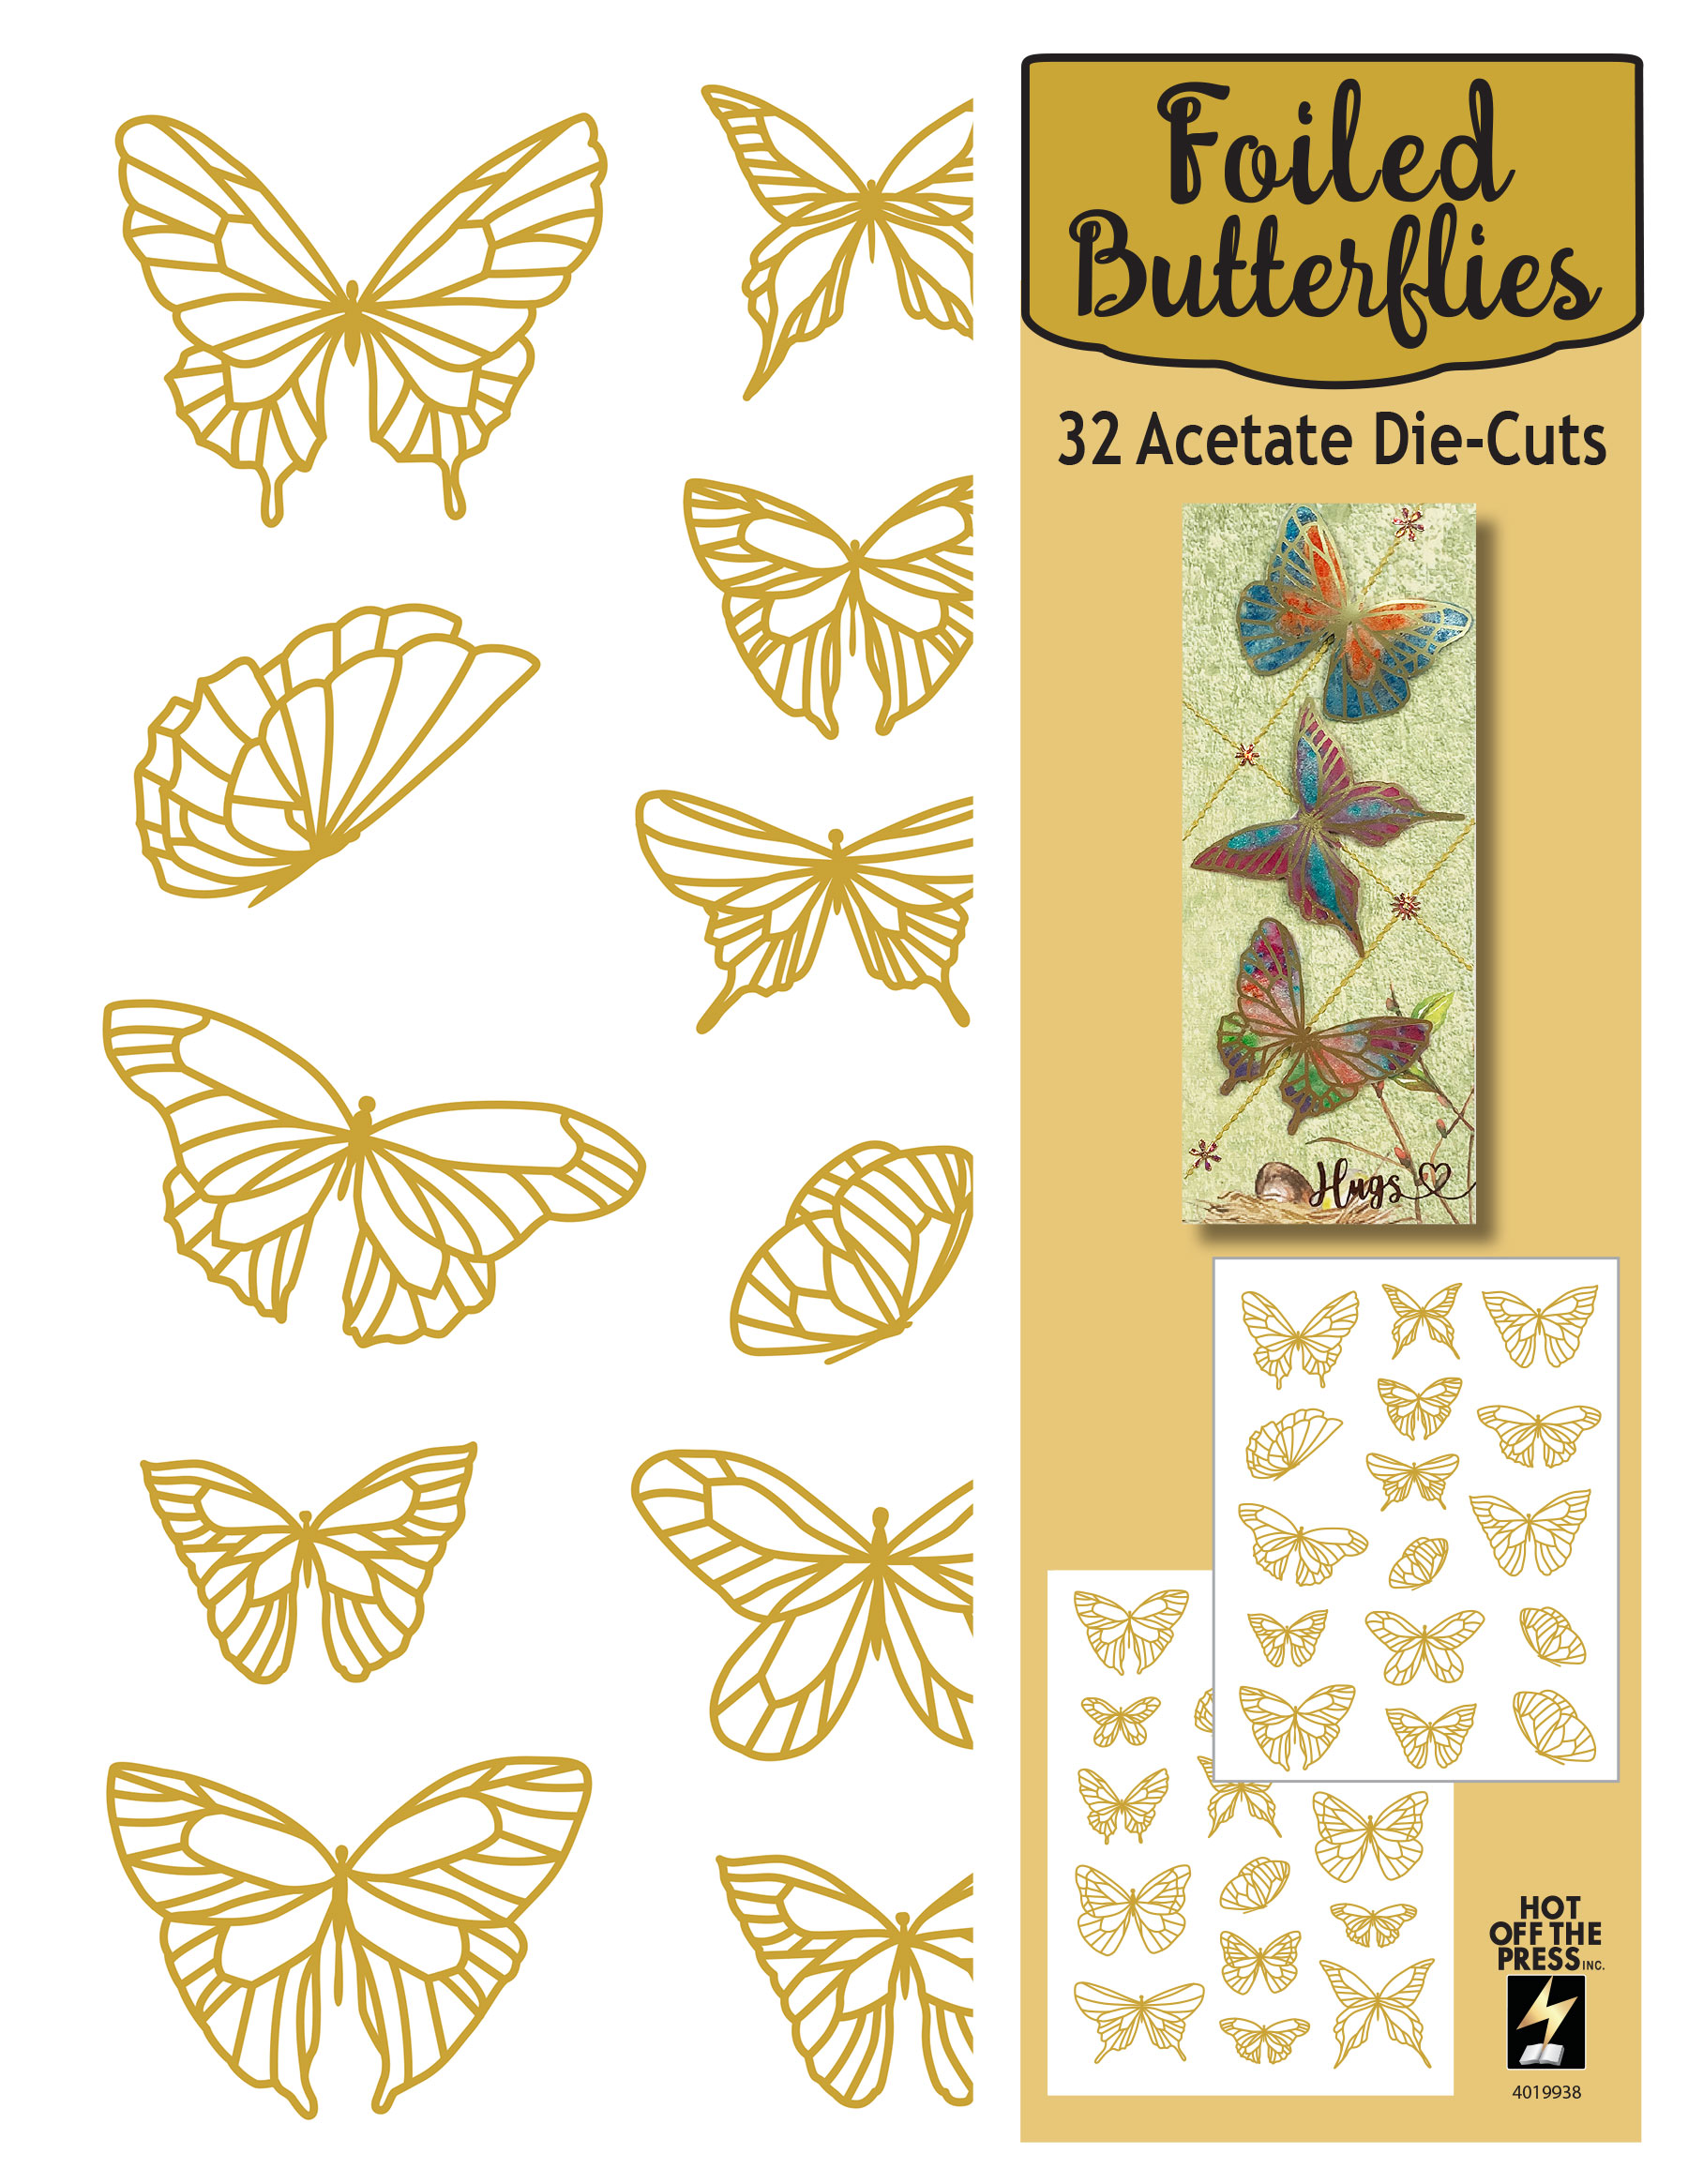 Gold Foiled Butterflies Die-Cut Acetate, 32 pieces